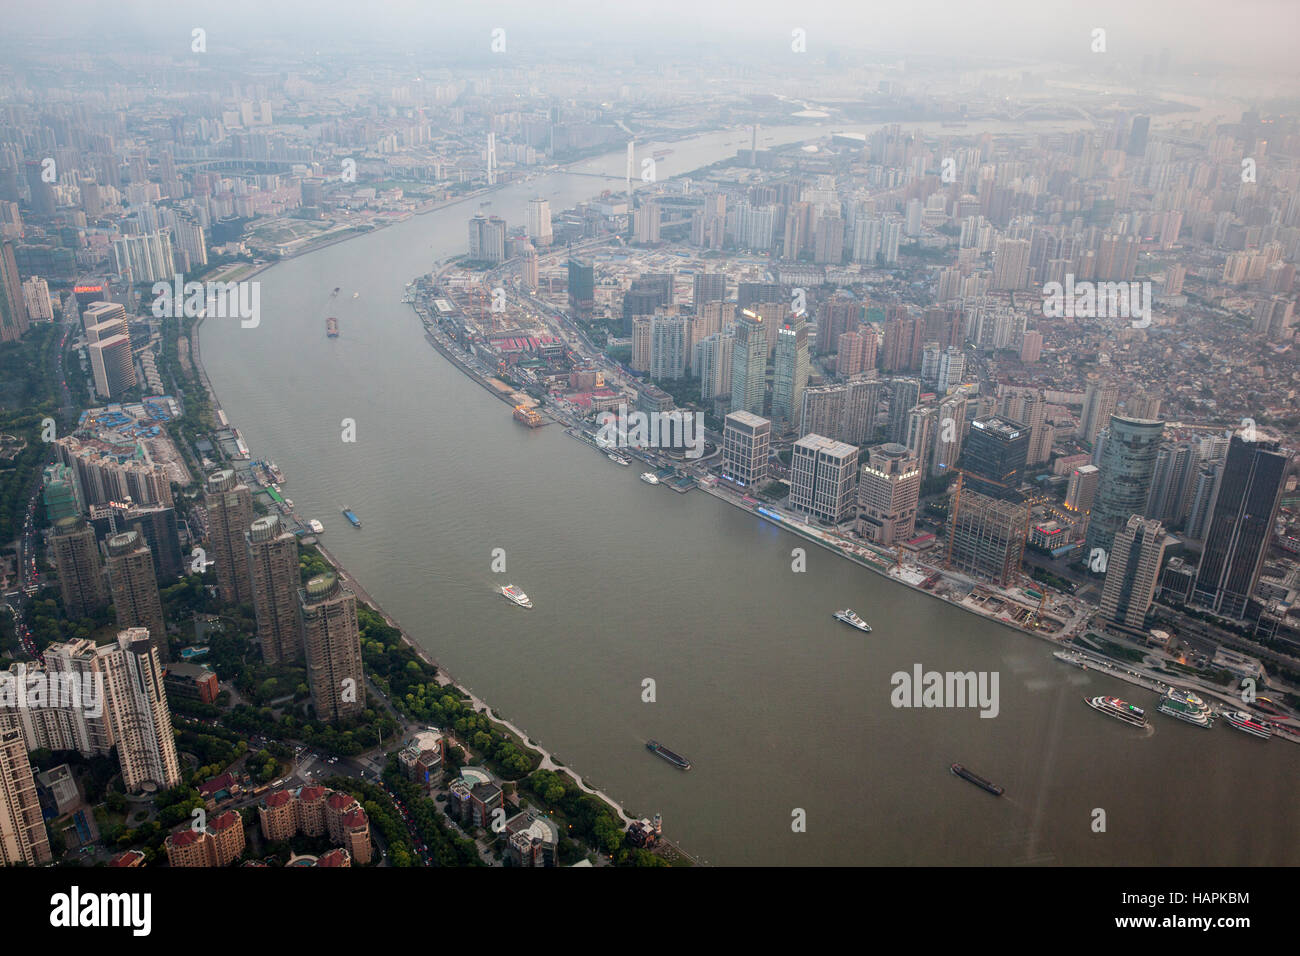 China, Shanghai City, The Bund and Huangpu River Stock Photo